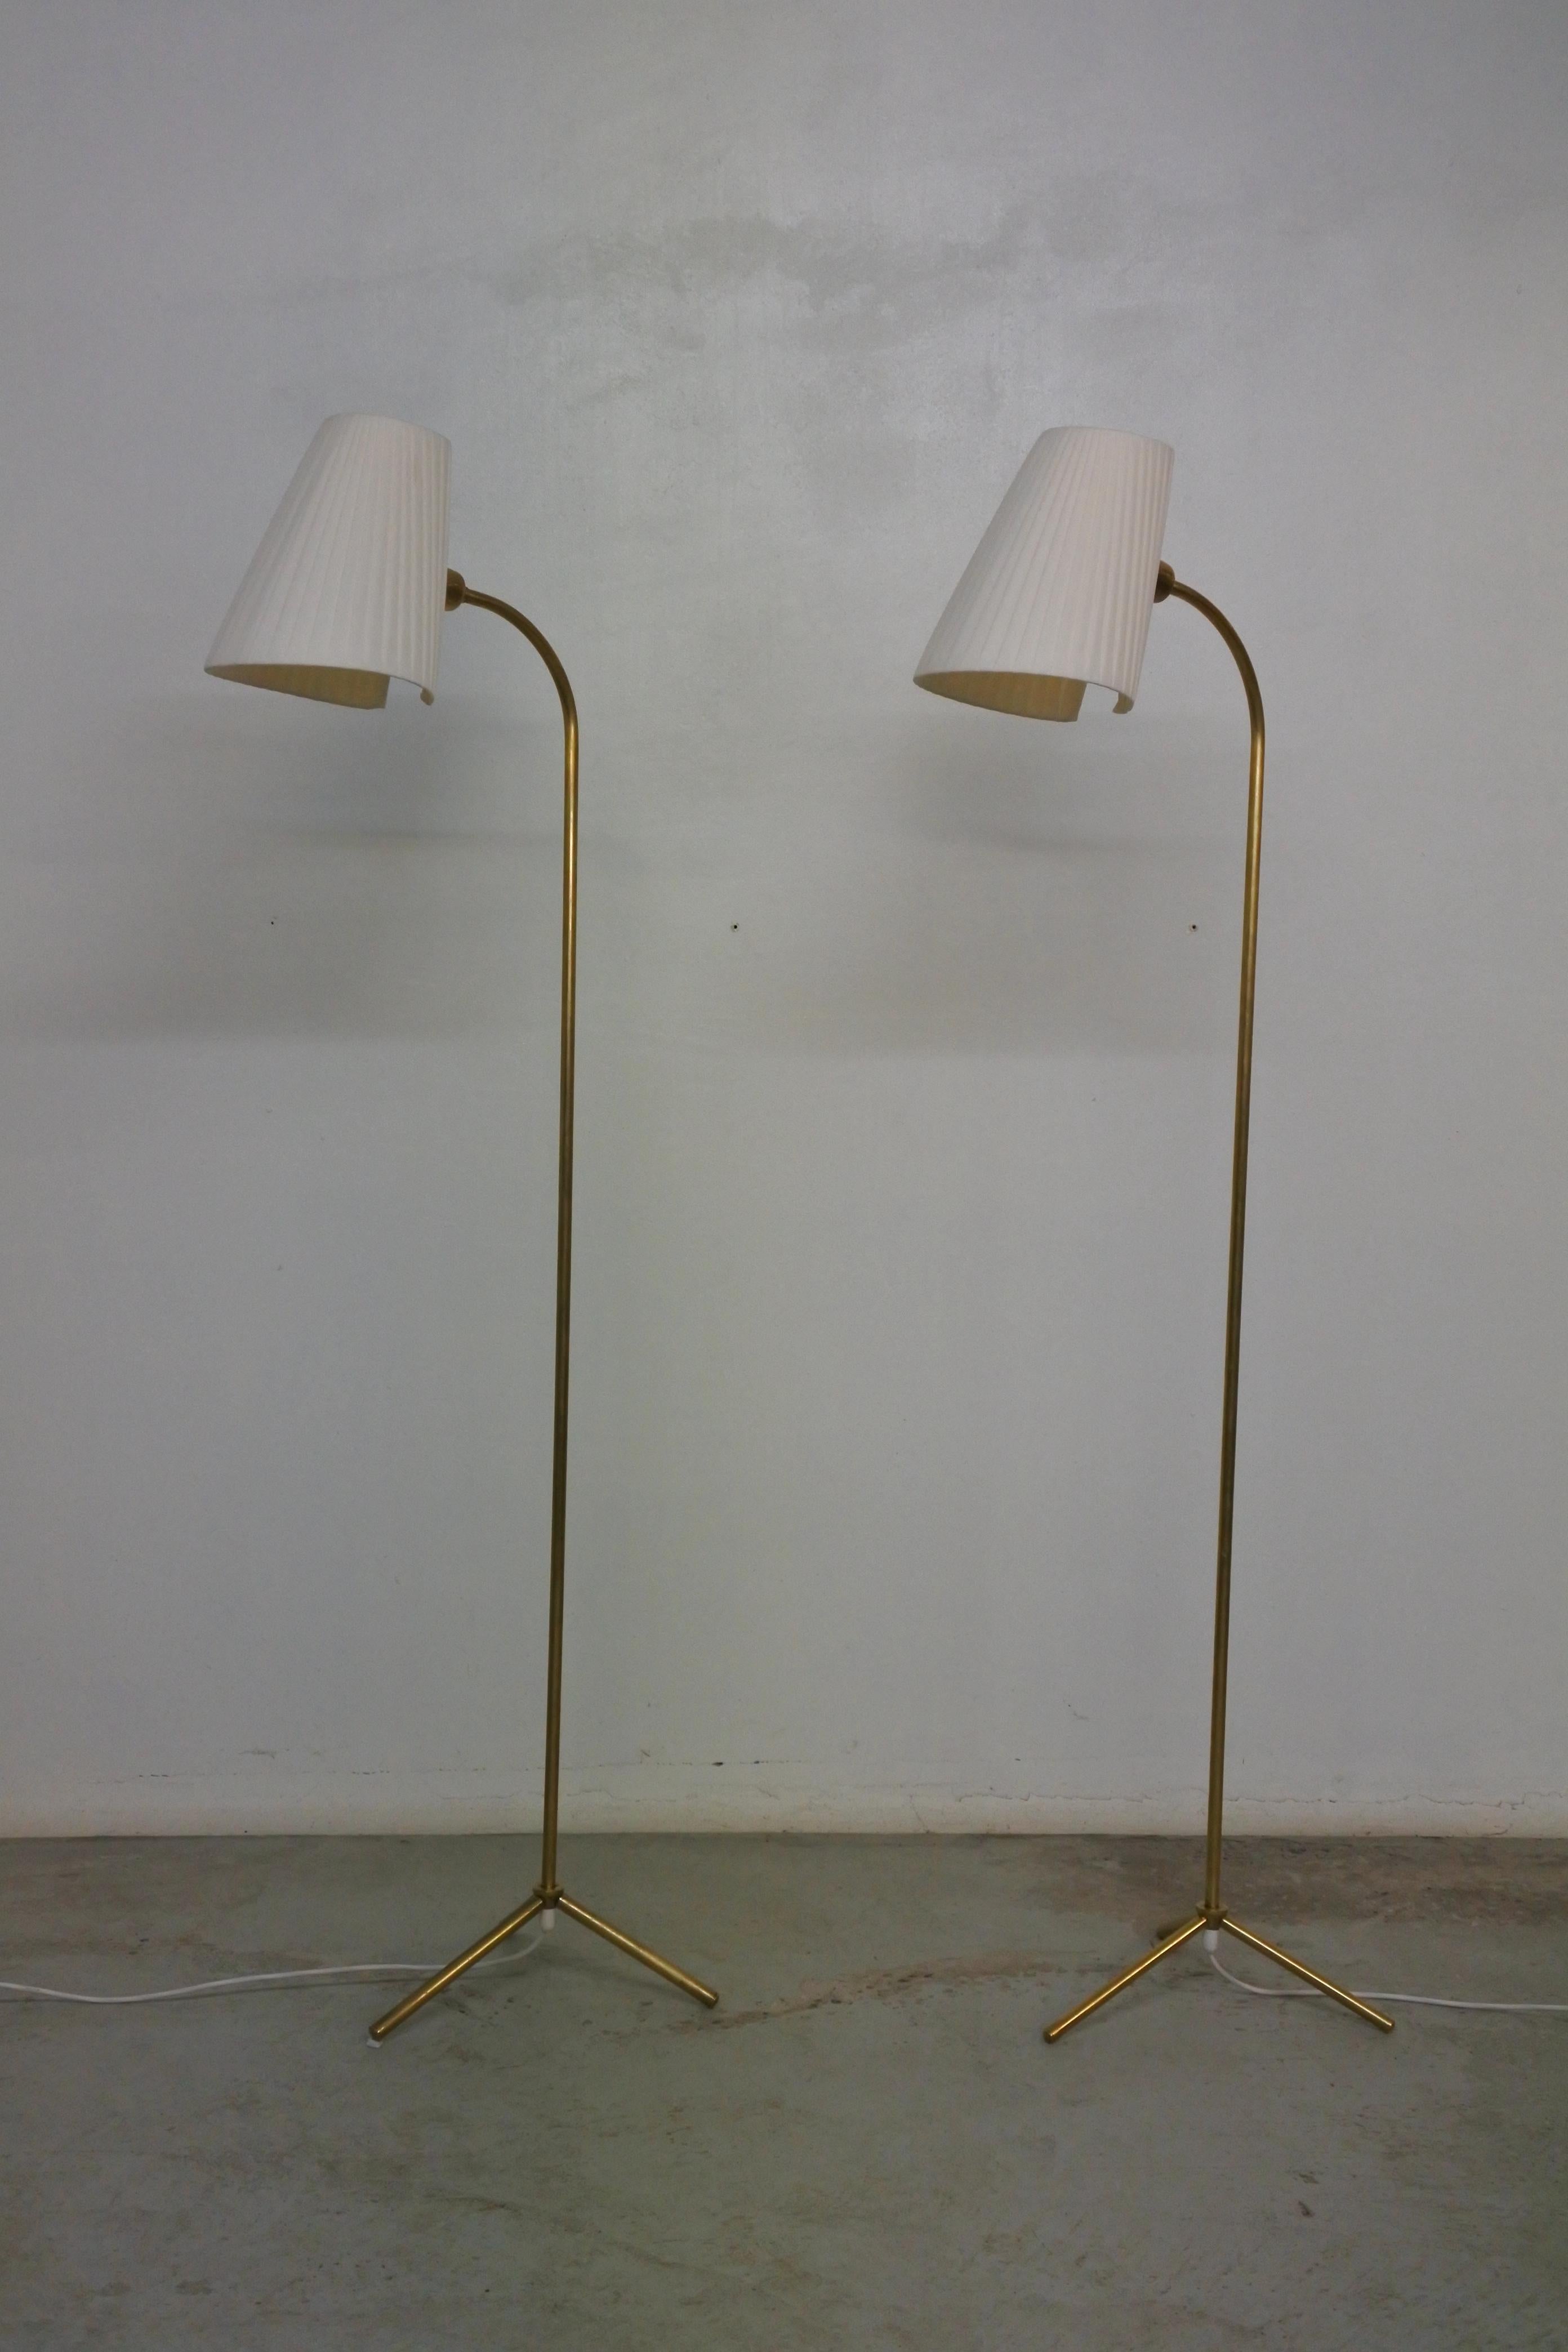 2 lampadaires tripodes de Lisa Johansson Pape.
Fabriqué par Orno dans les années 1950.
Tiges et pieds en laiton massif, abat-jour en soie.
Les ombres peuvent être orientées dans toutes les directions.

Même si les deux lampadaires ont la même